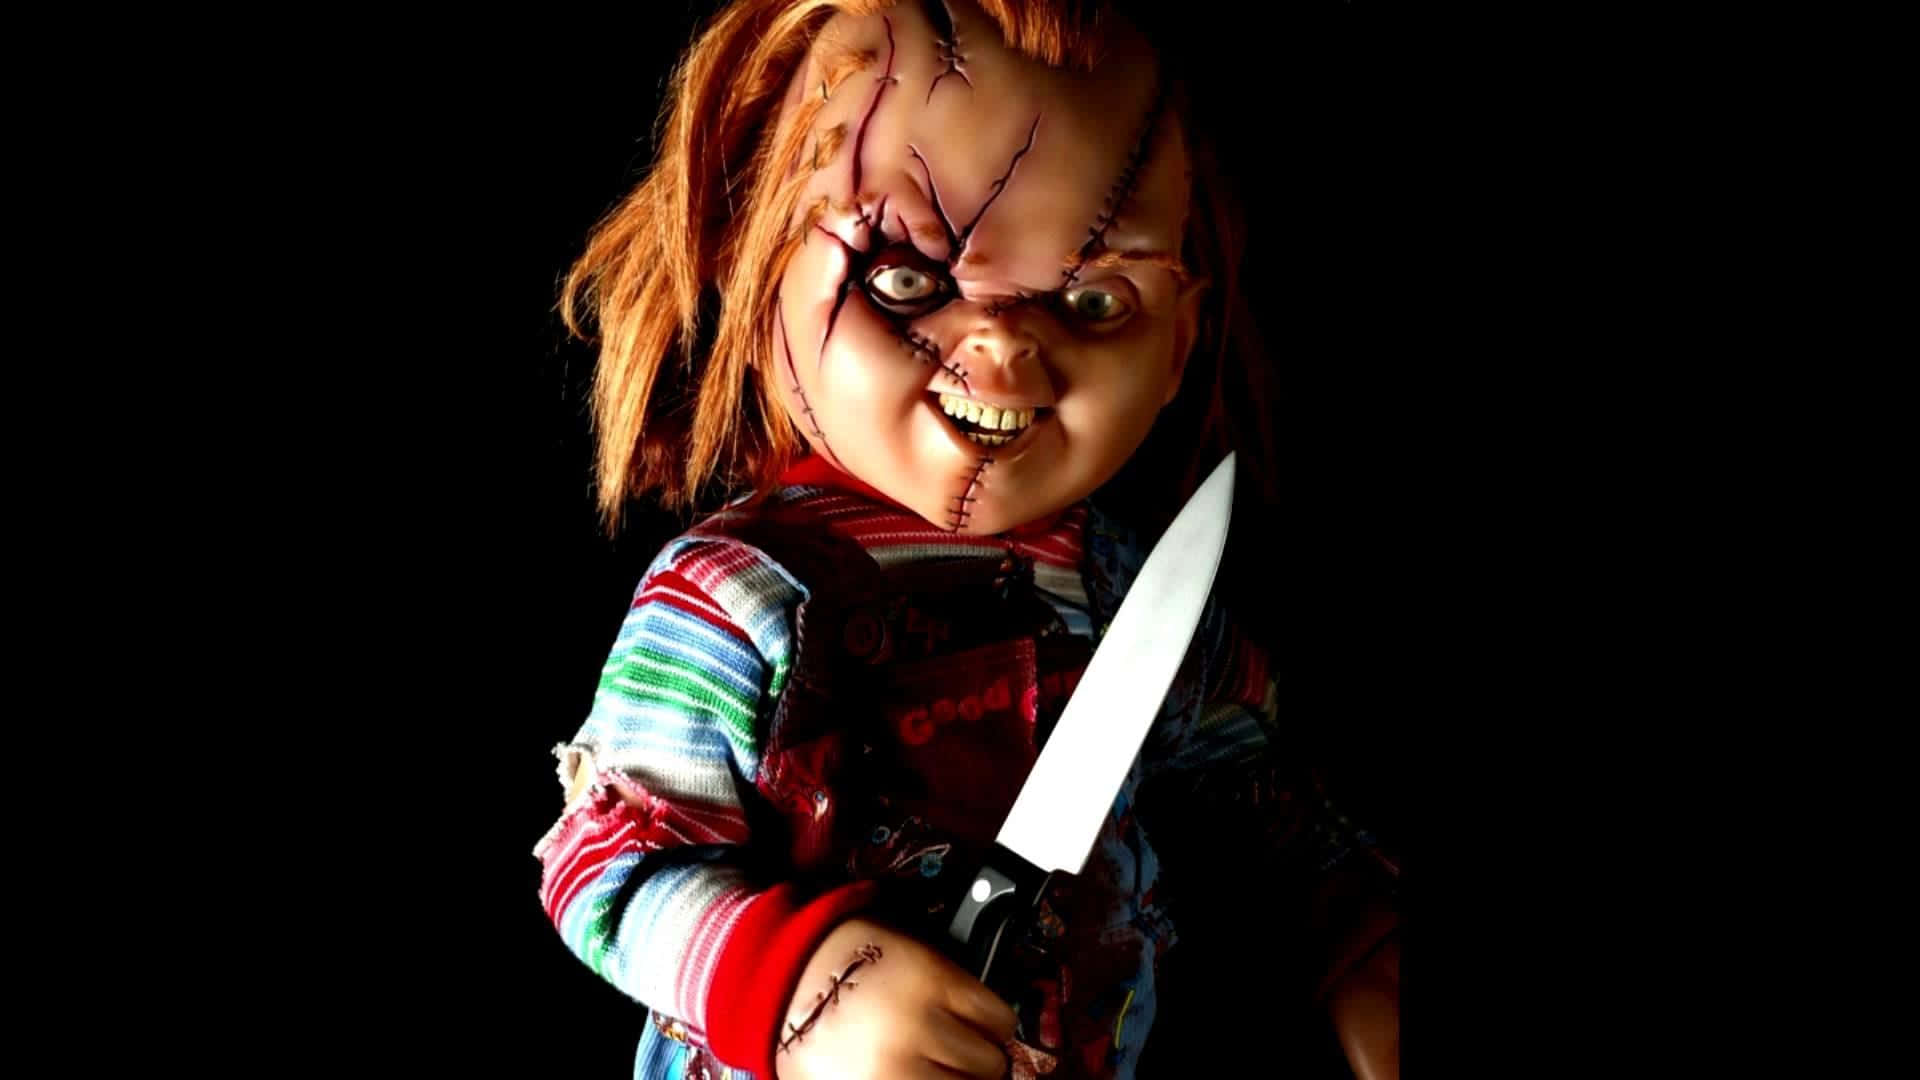 Einebeängstigende Szene Mit Einer Chucky-puppe, Die Direkt In Die Kamera Schaut. Wallpaper